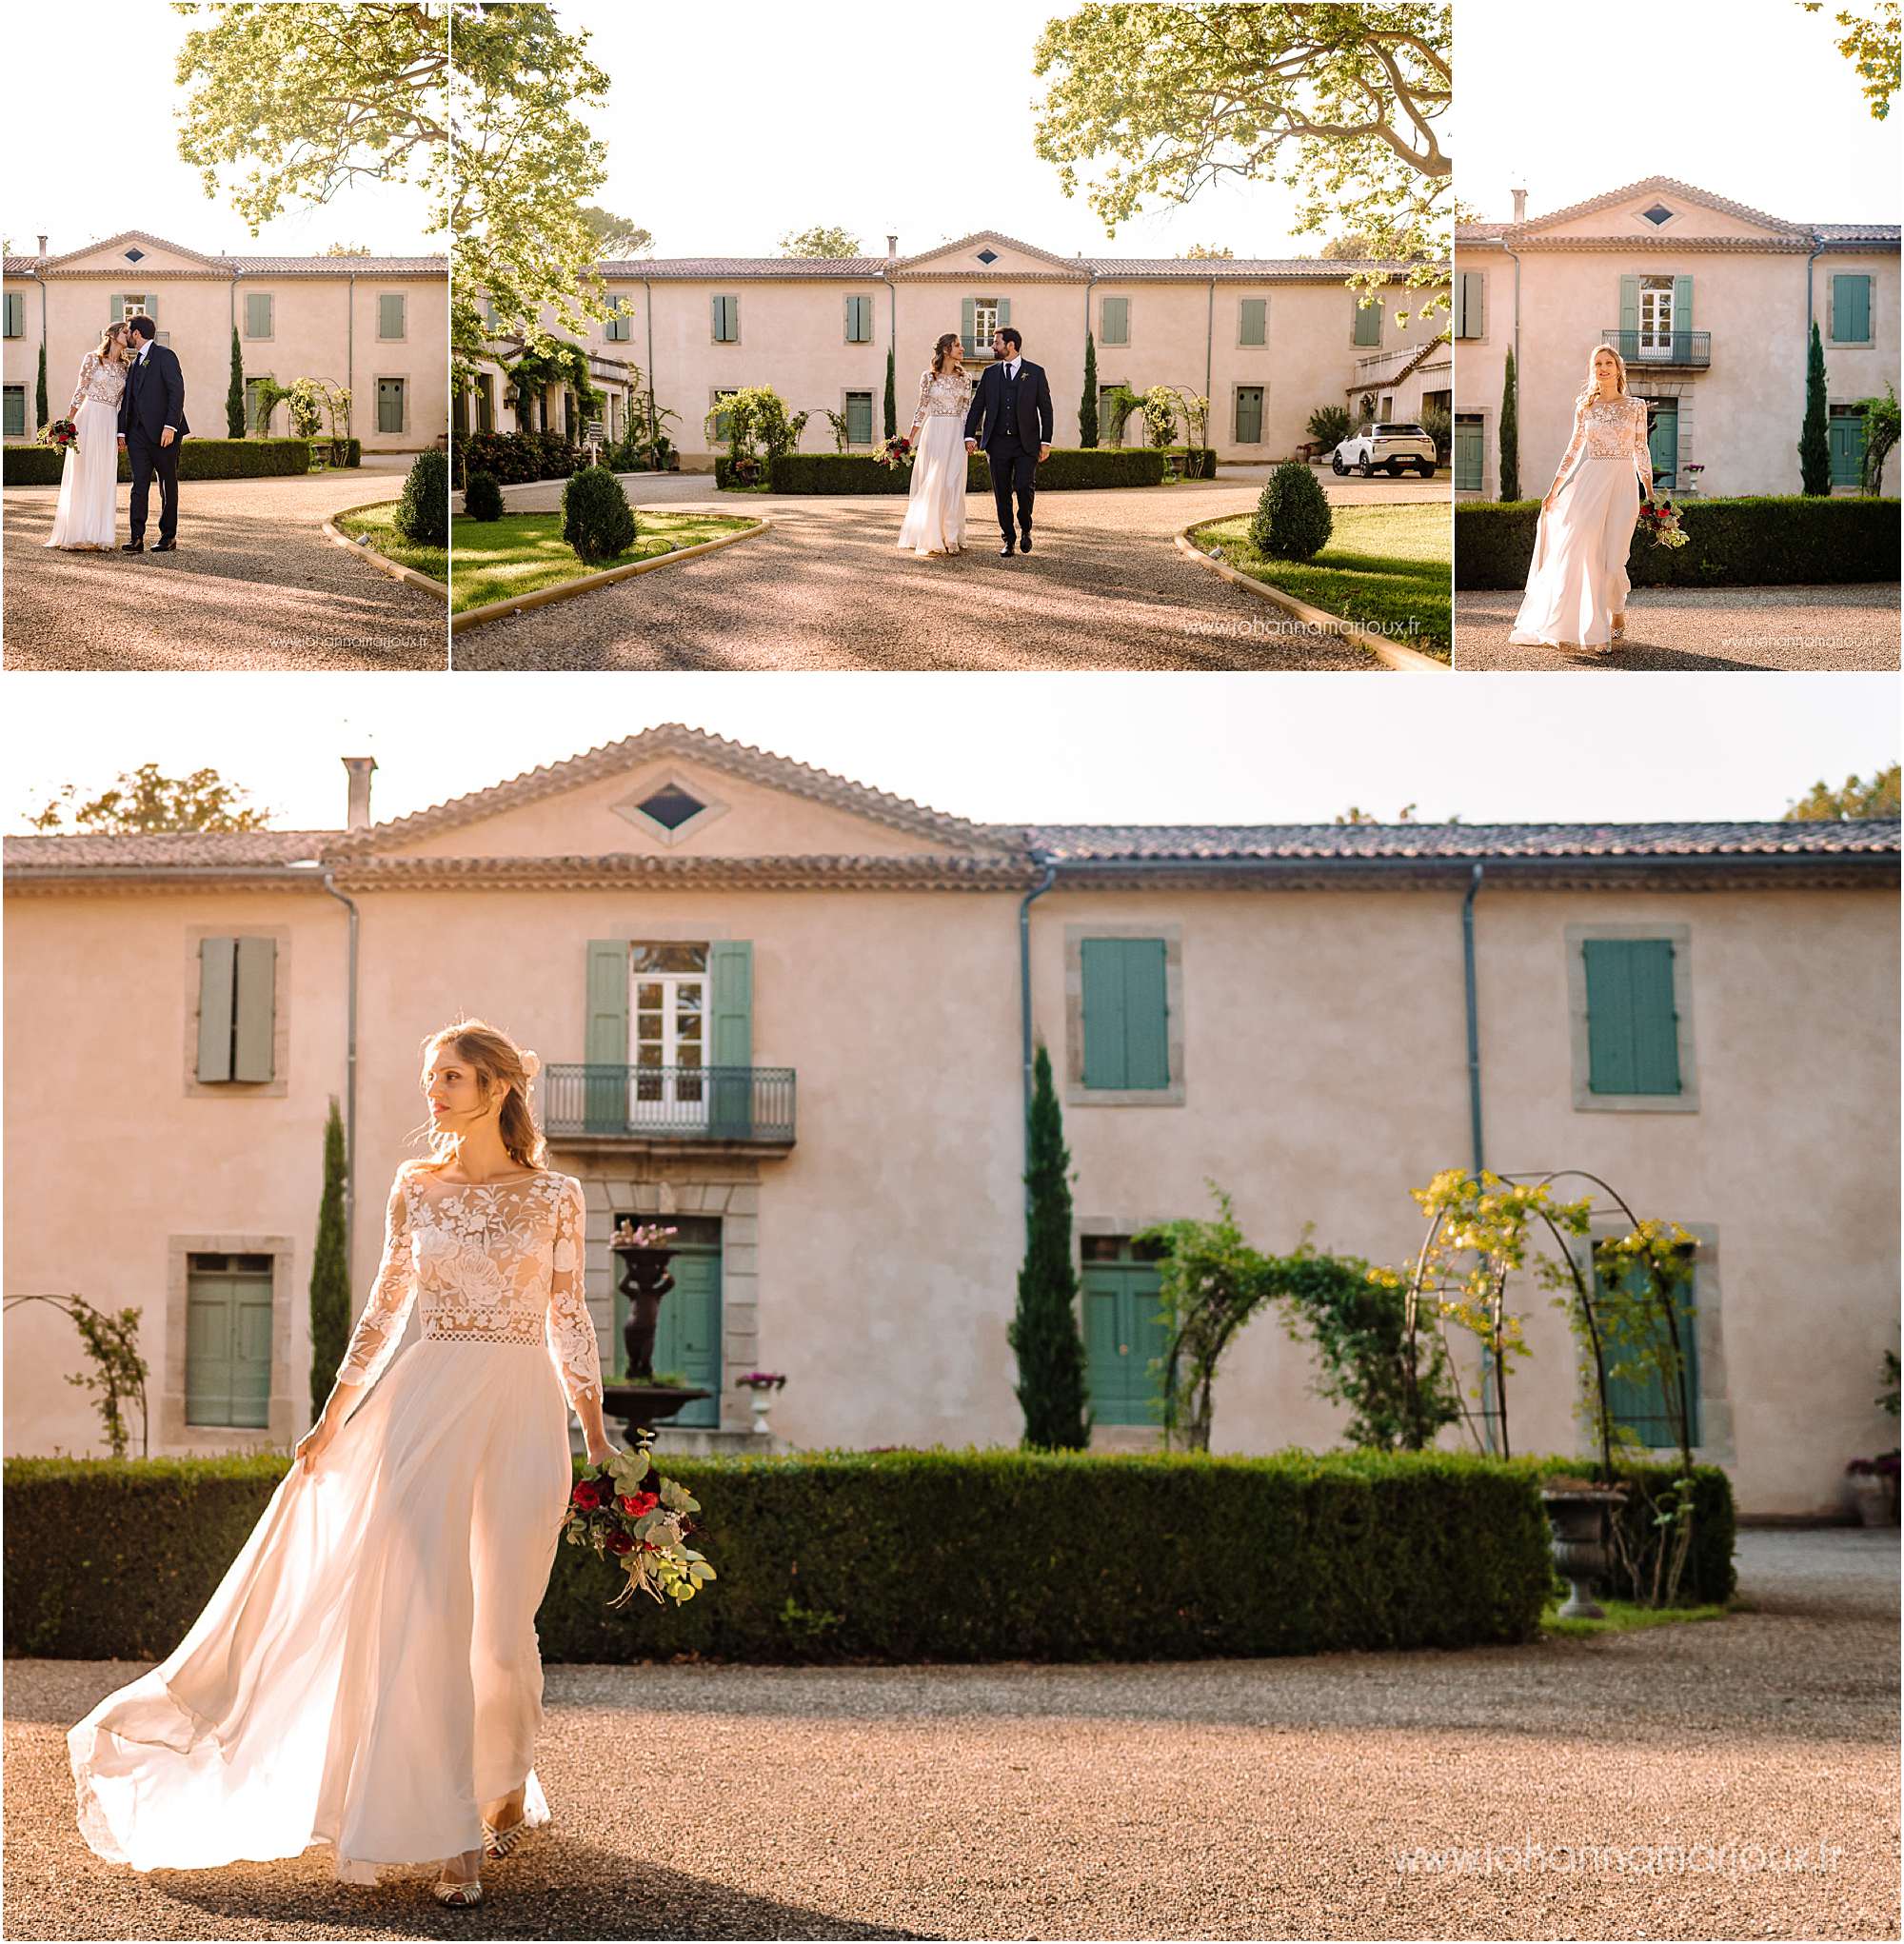 Photographe de mariage en Aveyron